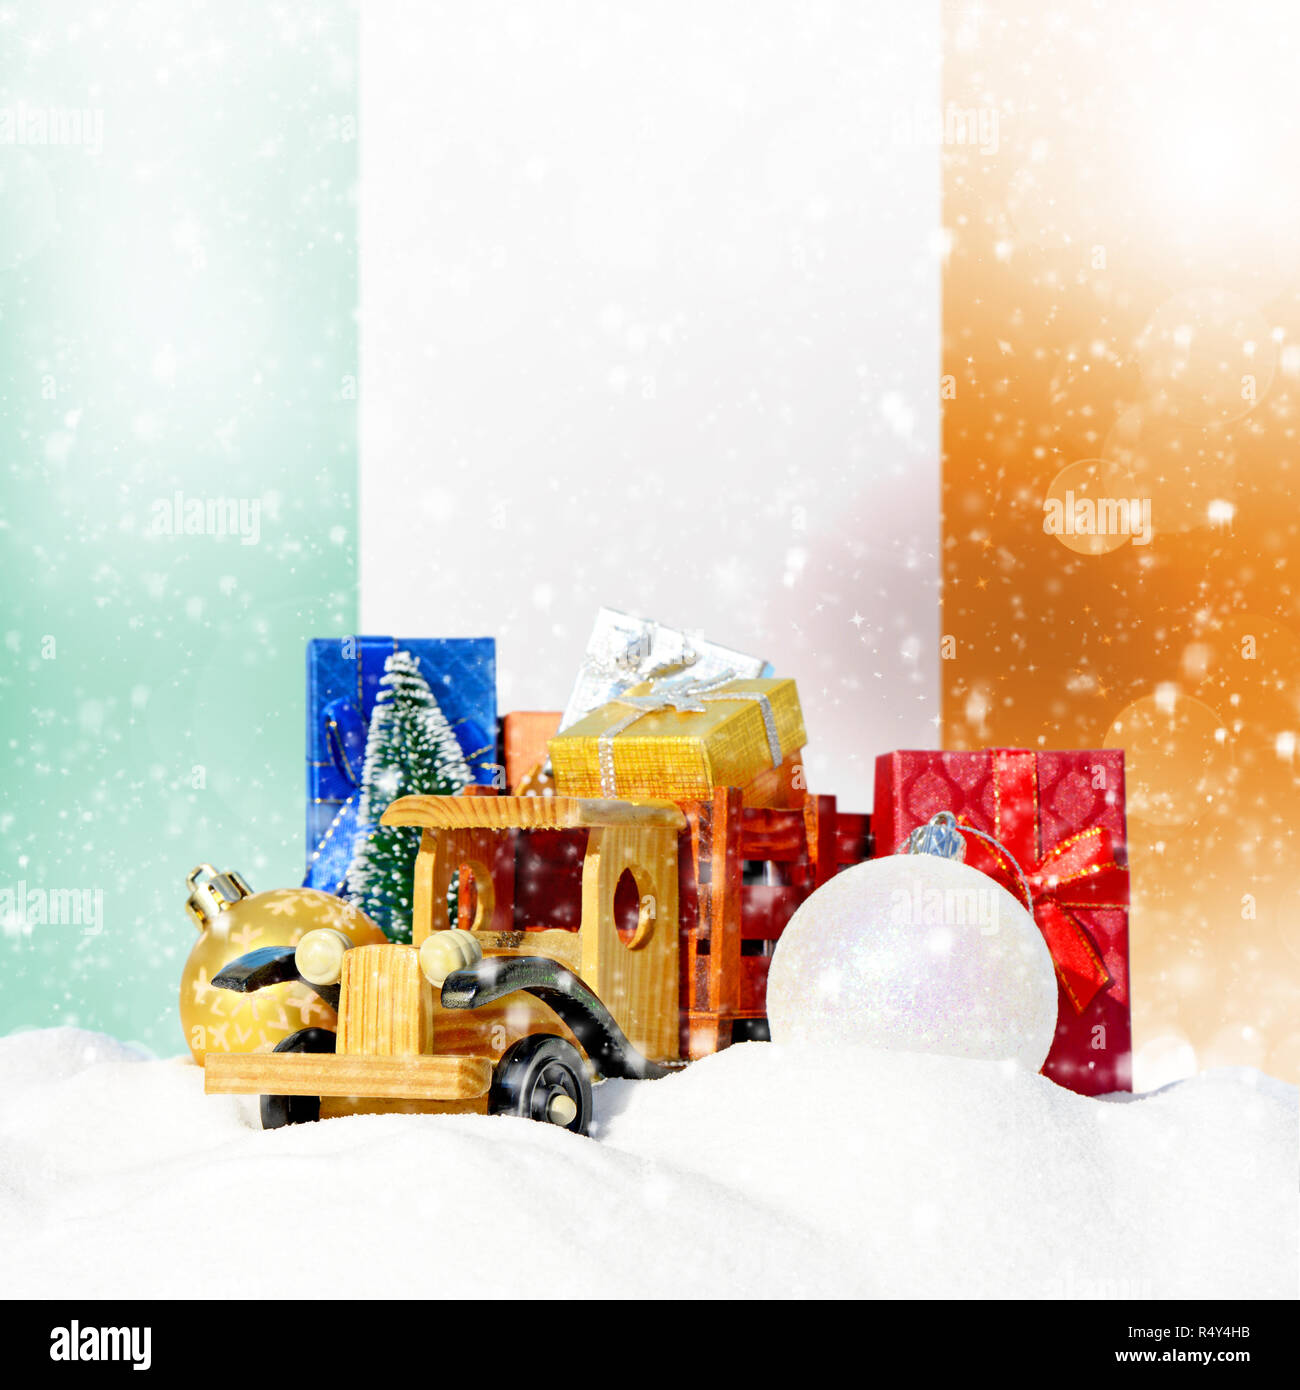 Weihnachten Hintergrund. Spielzeug-LKW mit Geschenken, Neues Jahr Tanne, Kugeln im Schneetreiben und irische Flagge Stockfoto